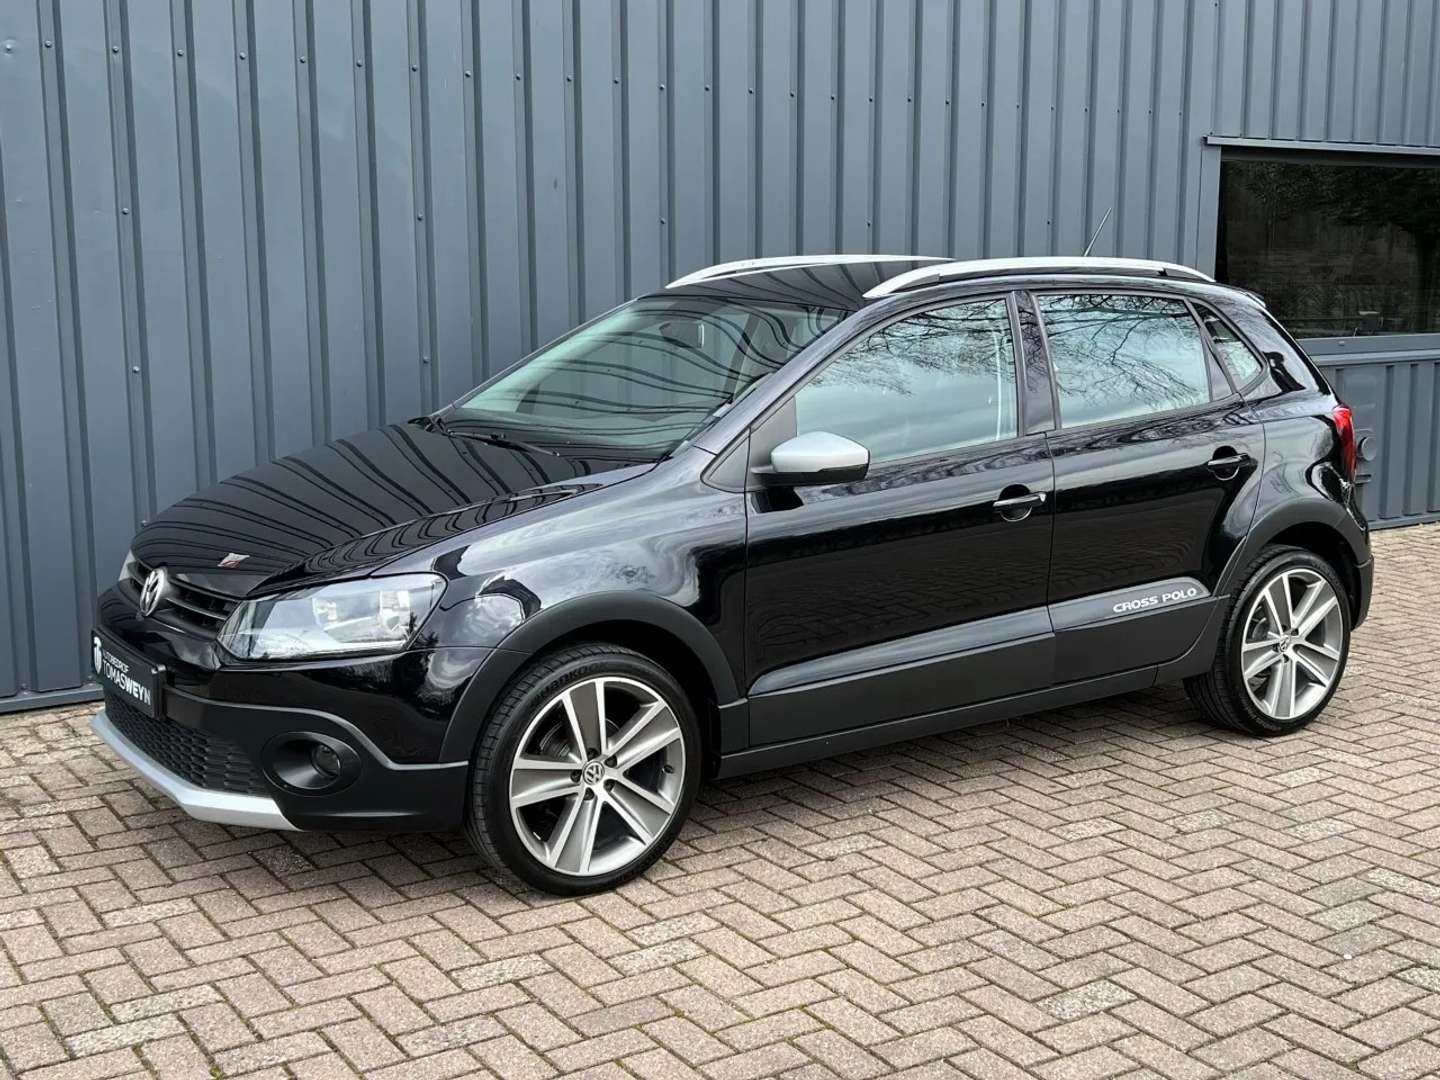 Volkswagen Polo Cross Hatchback in Zwart gebruikt in APELDOORN voor €  9.795,-